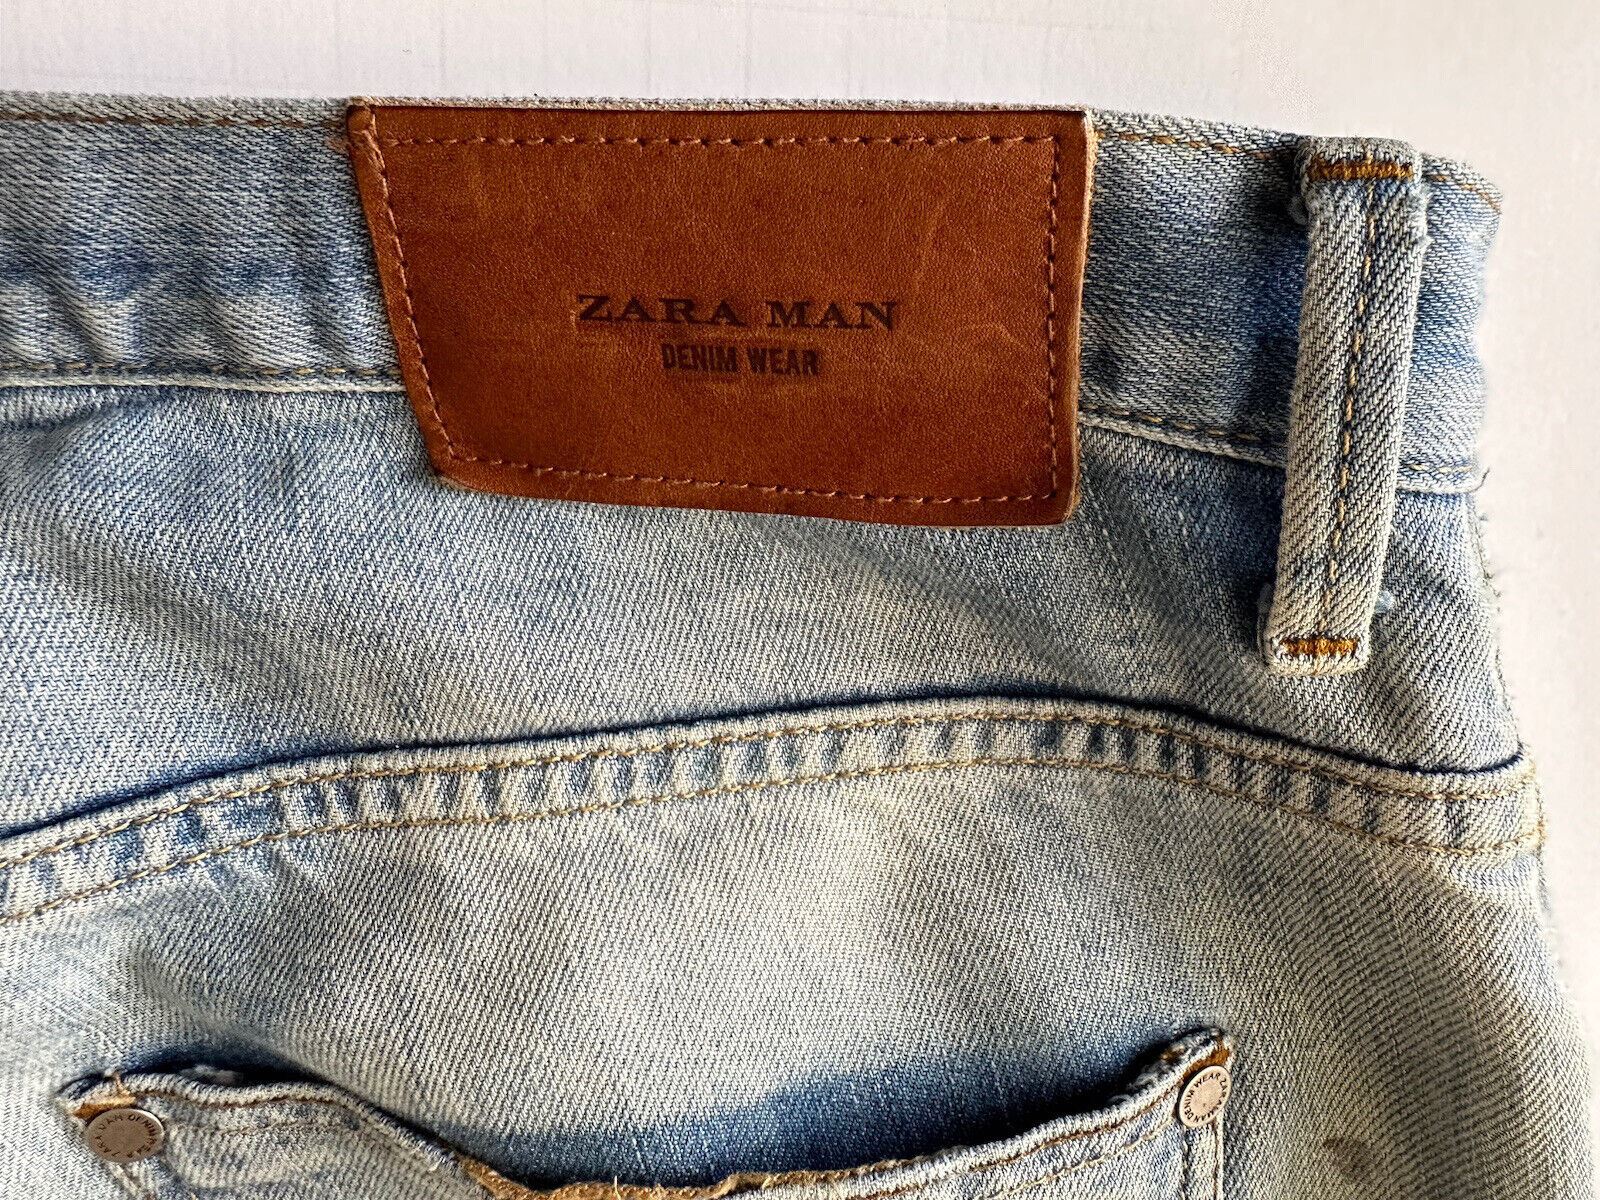 Hellblaue, moderne Jeans von ZARA für Herren, Größe 32 US (34 Zoll gemessen)